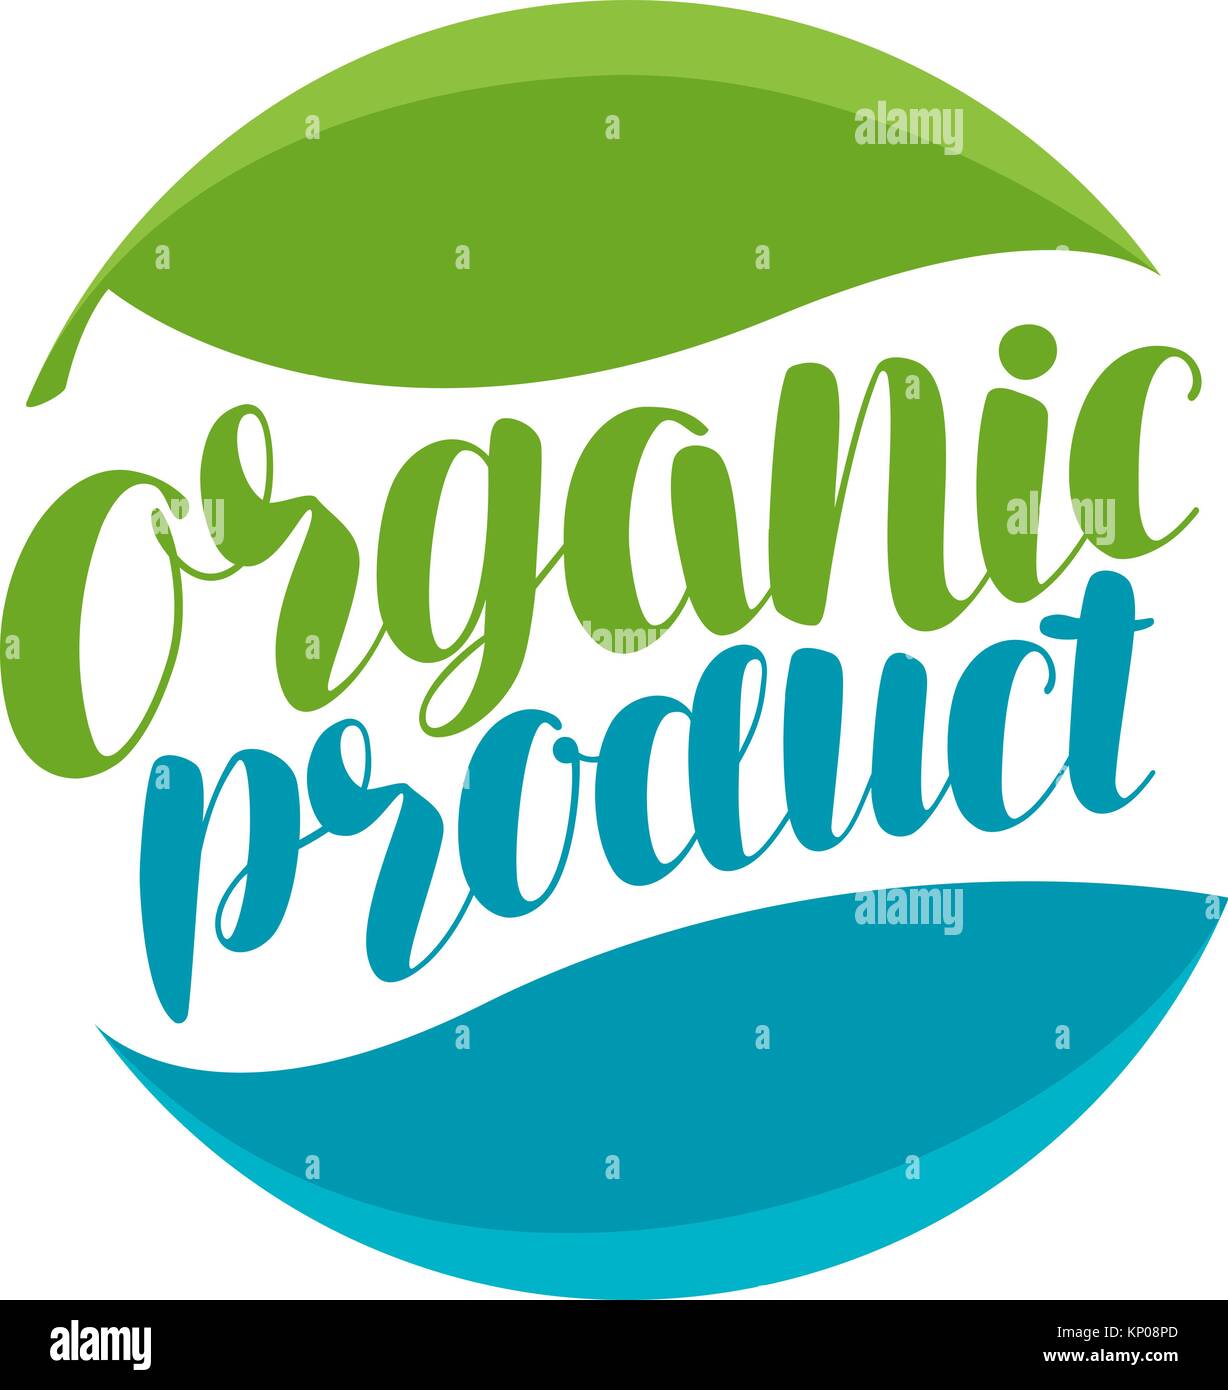 Prodotto organico, logo o etichetta. Icona naturale. Disegno tipografica illustrazione vettoriale Illustrazione Vettoriale